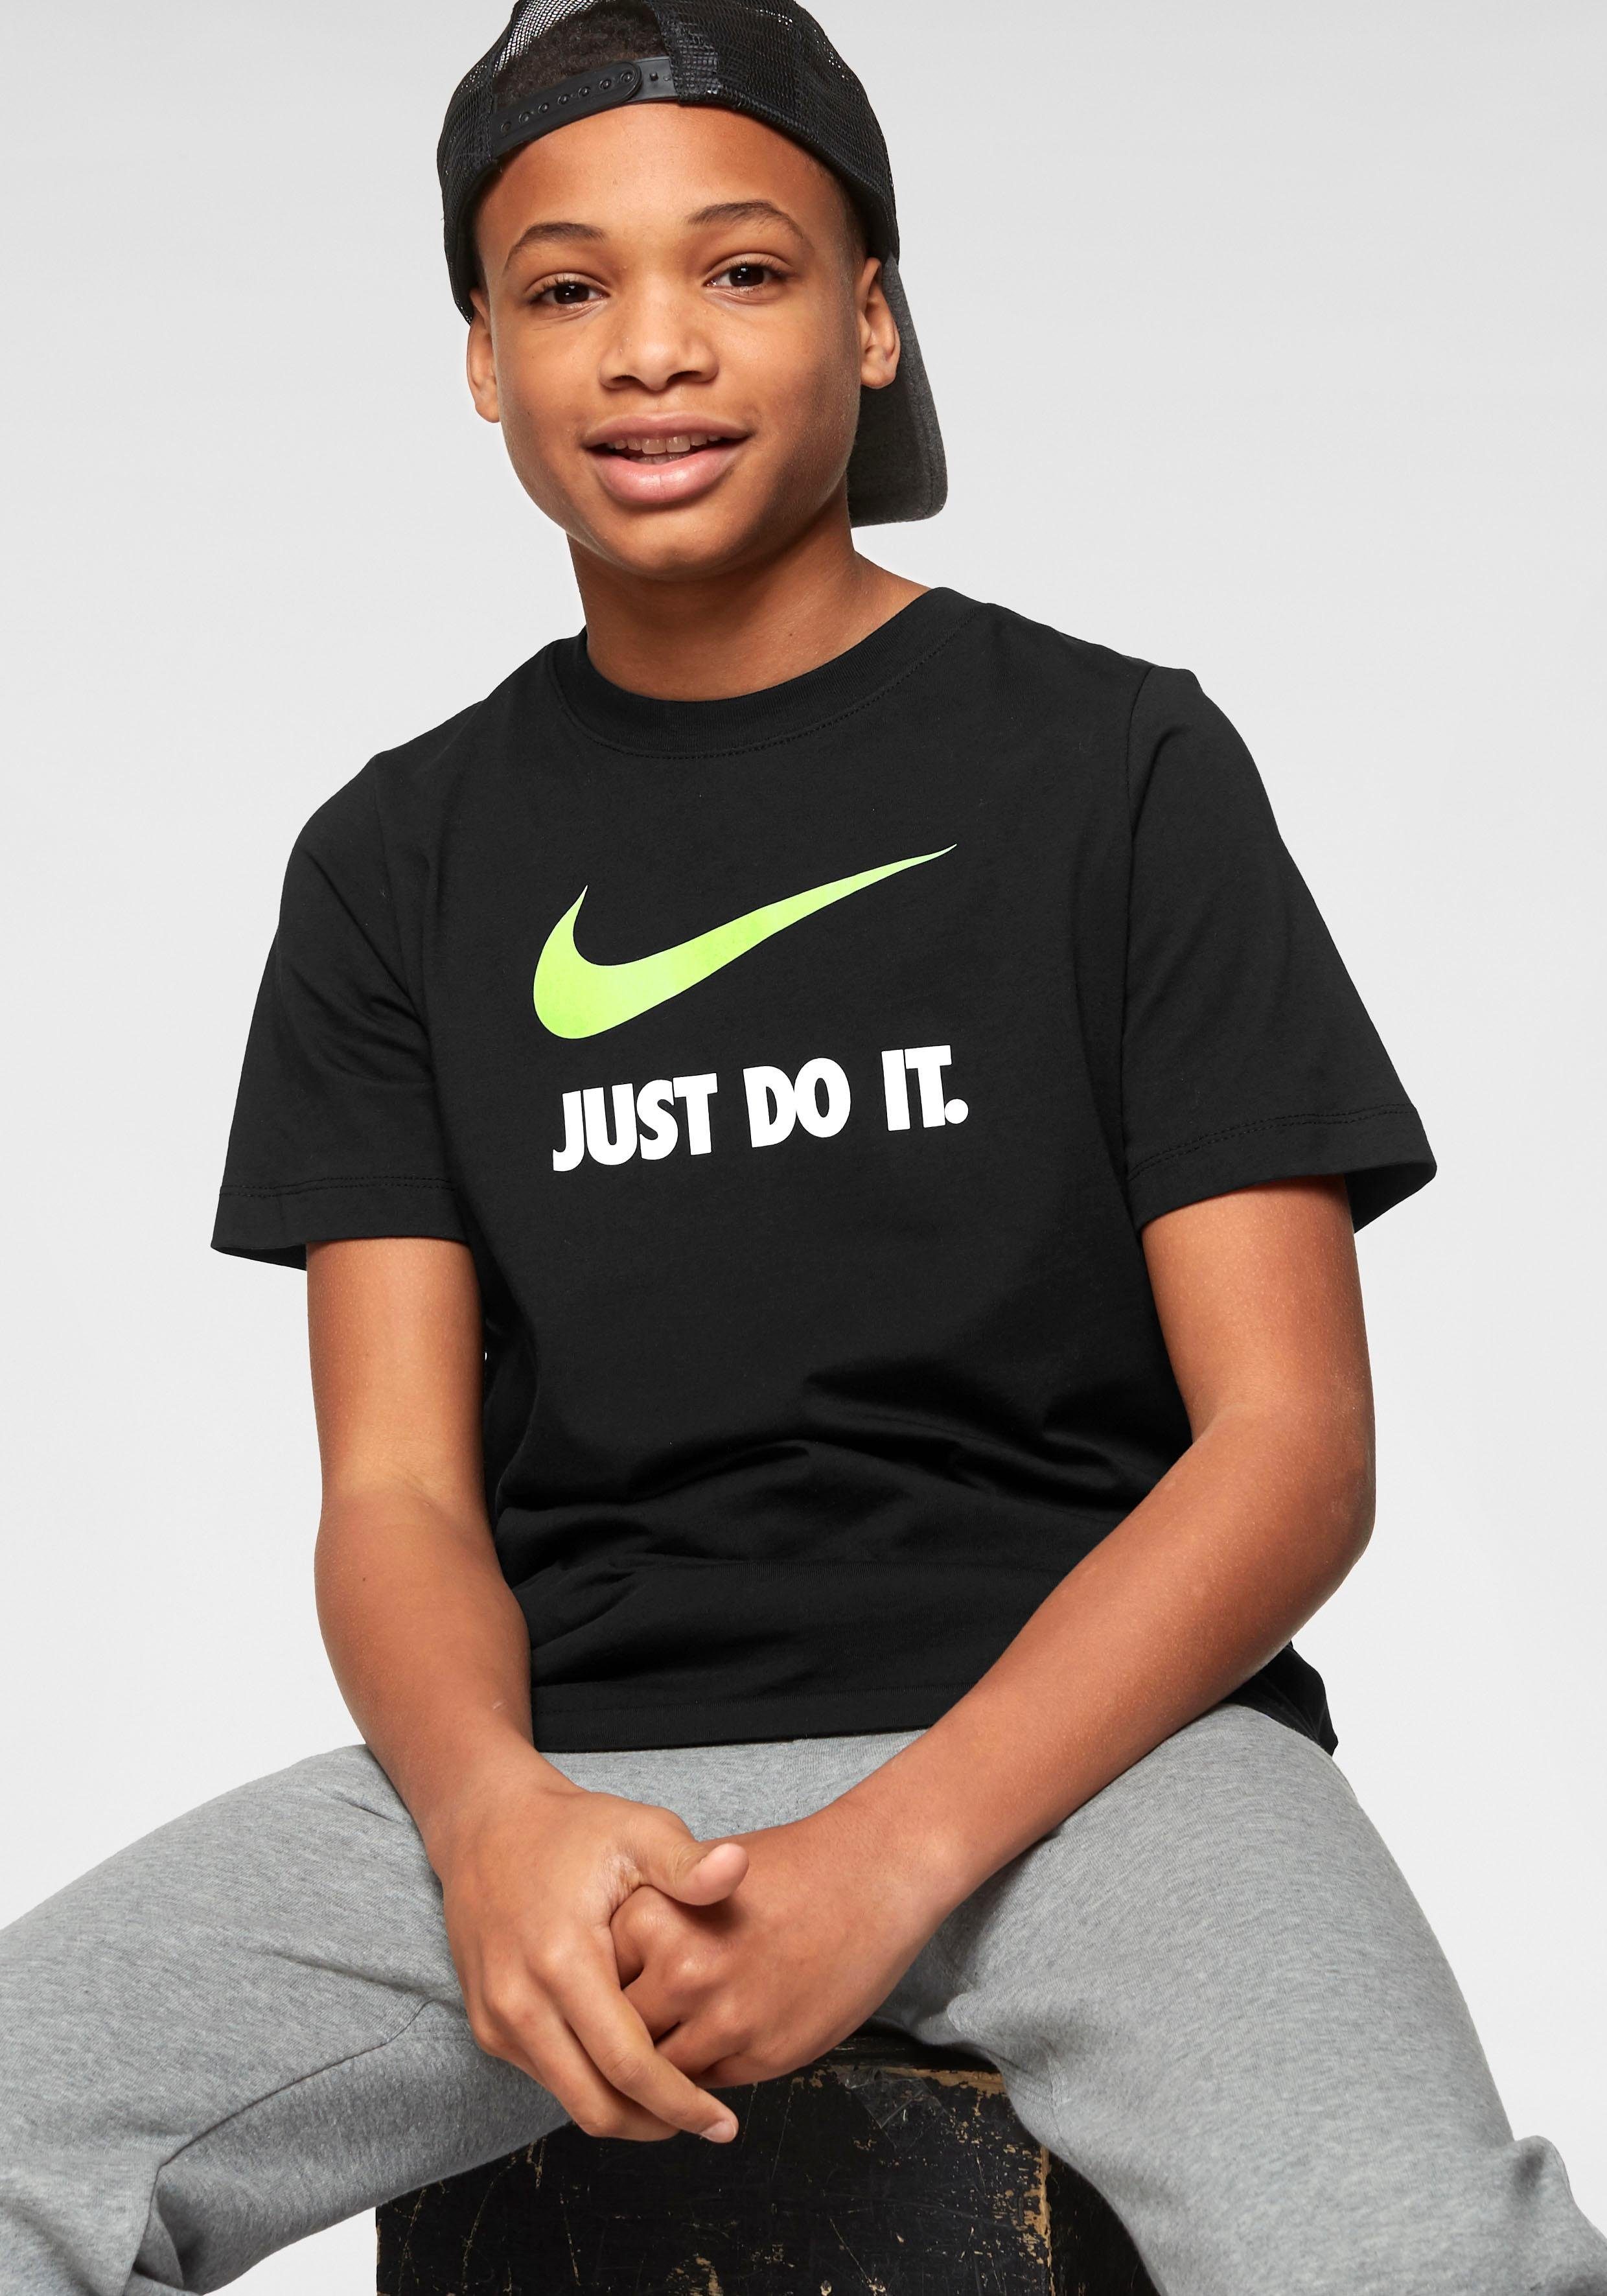 Nike Jungen Shirts online kaufen | OTTO